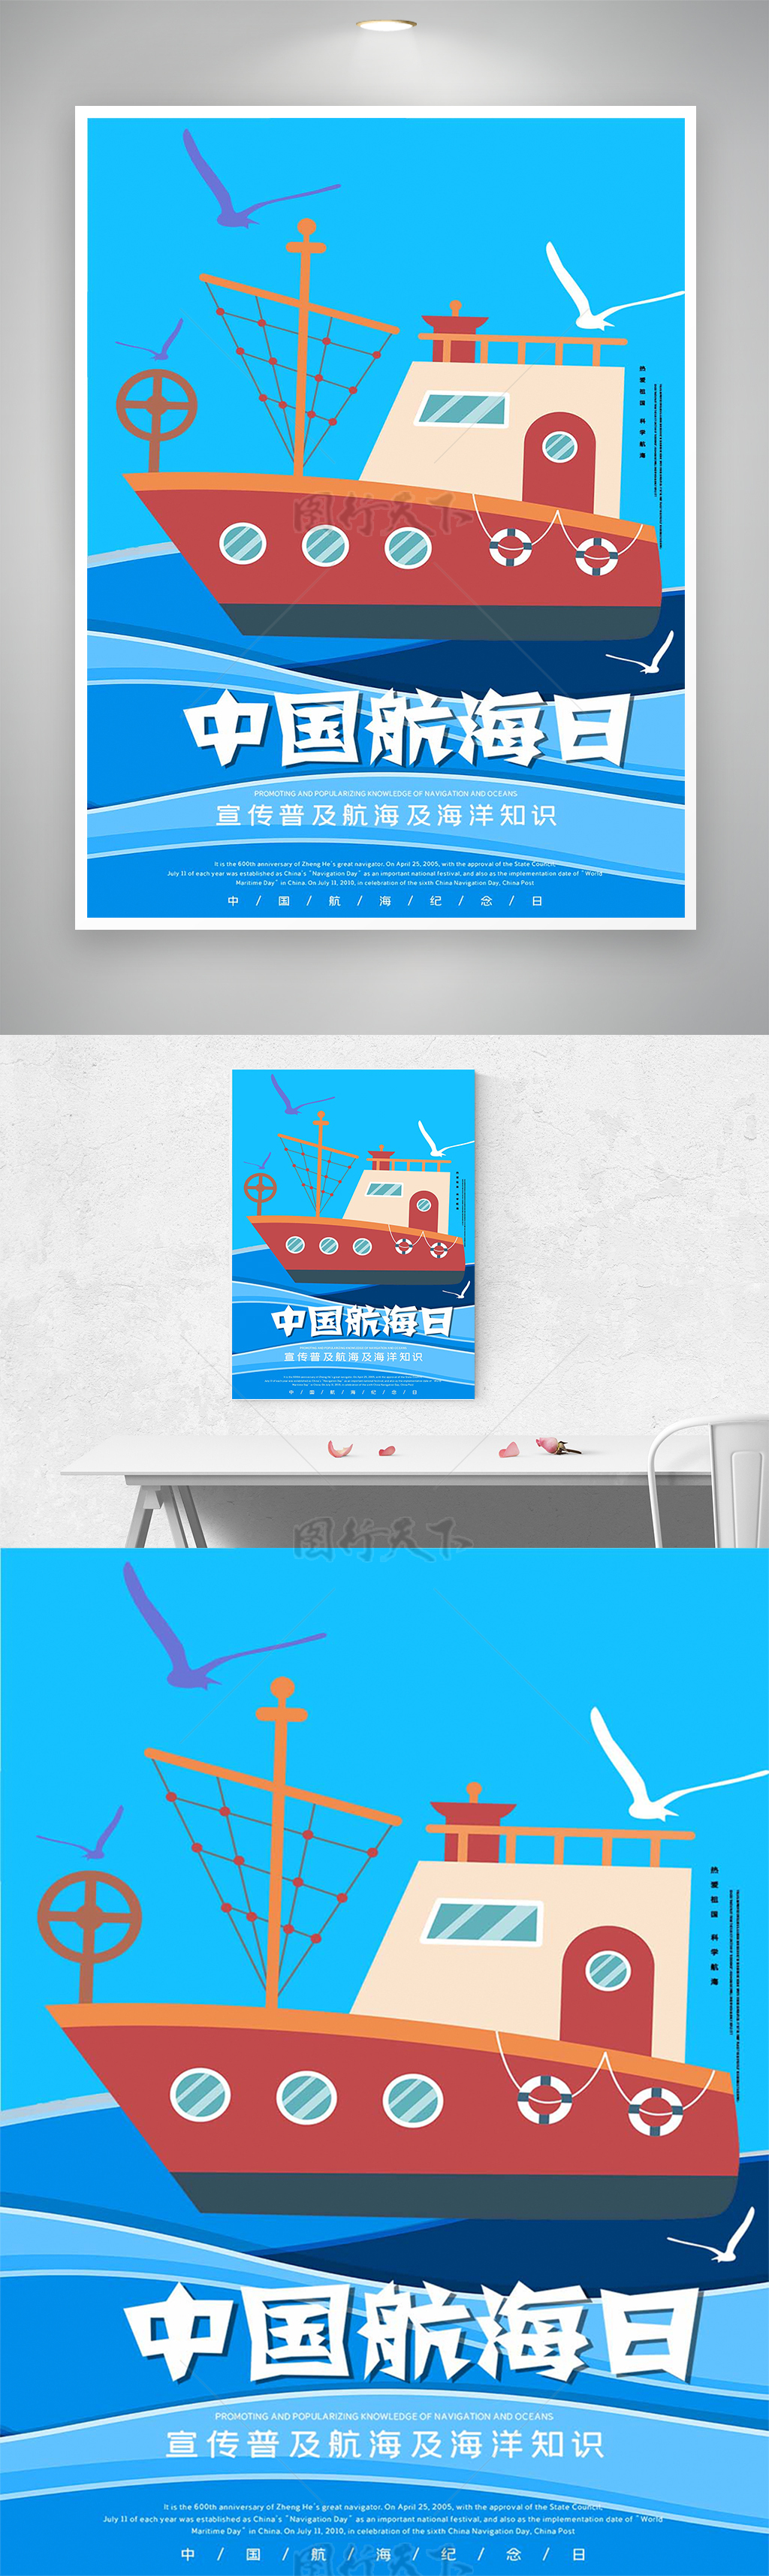 中国航海日节日纪念宣传卡通海报